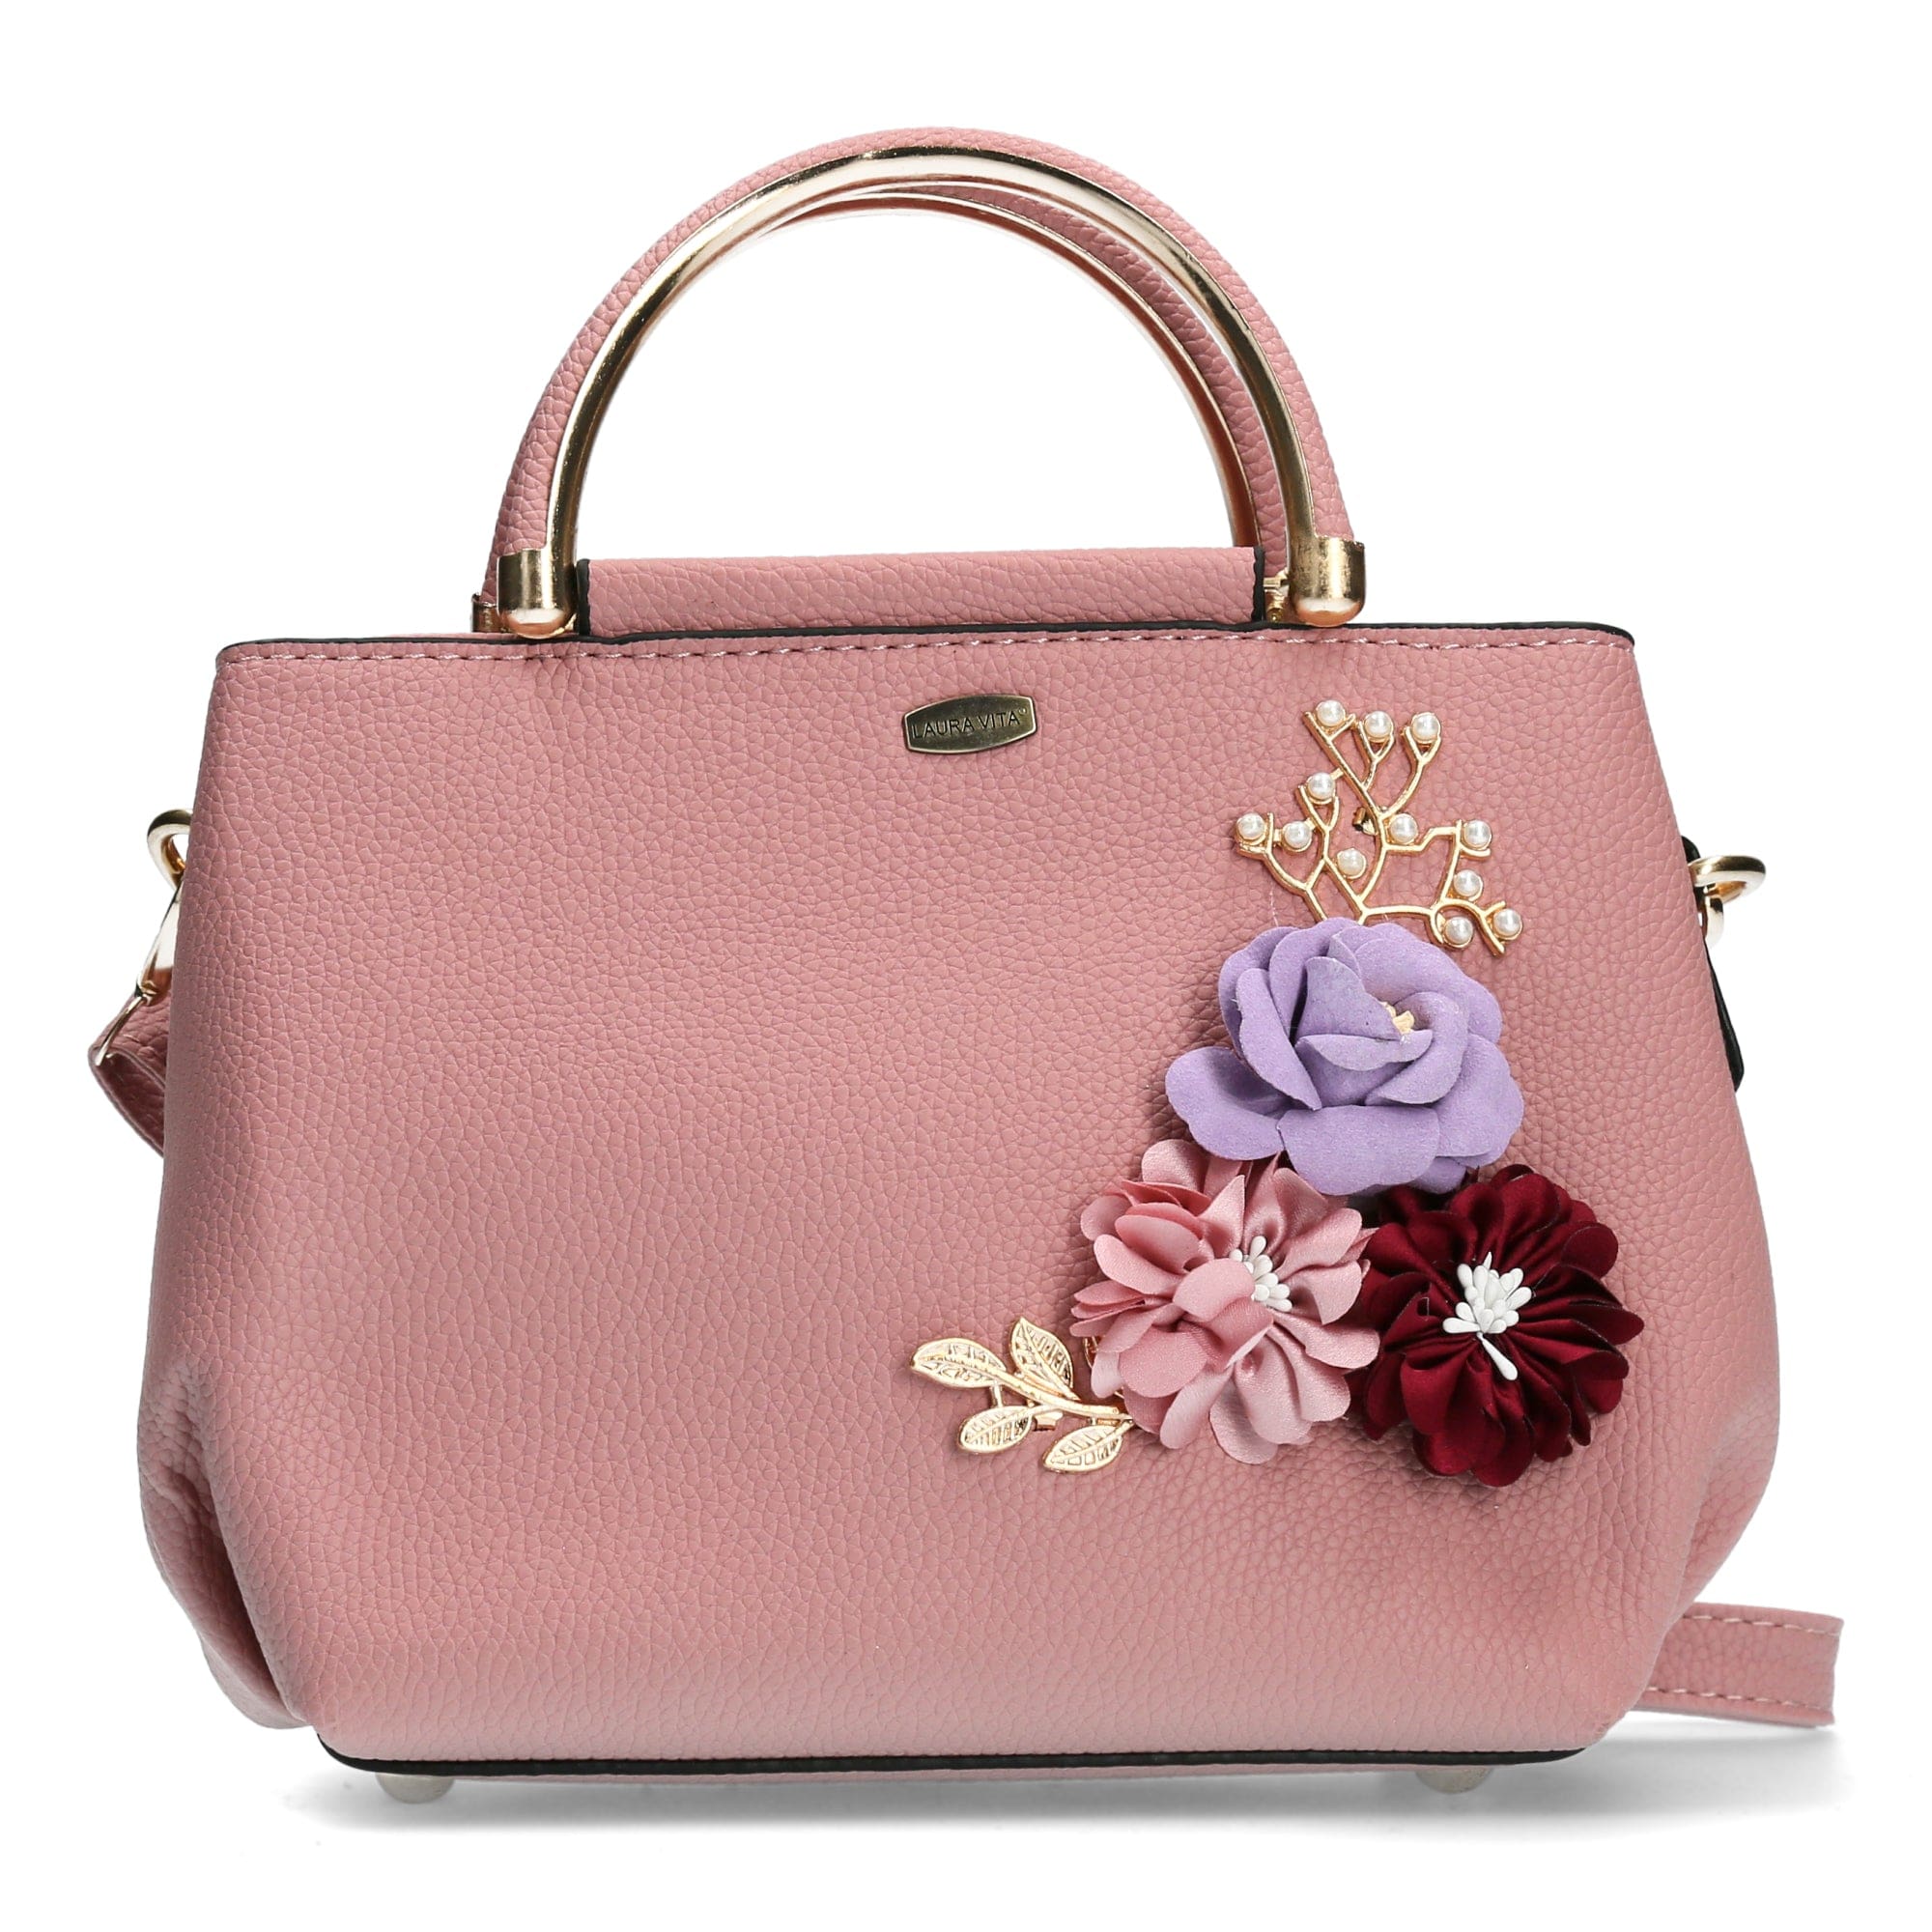 Delancey Bag - Pink - Bag